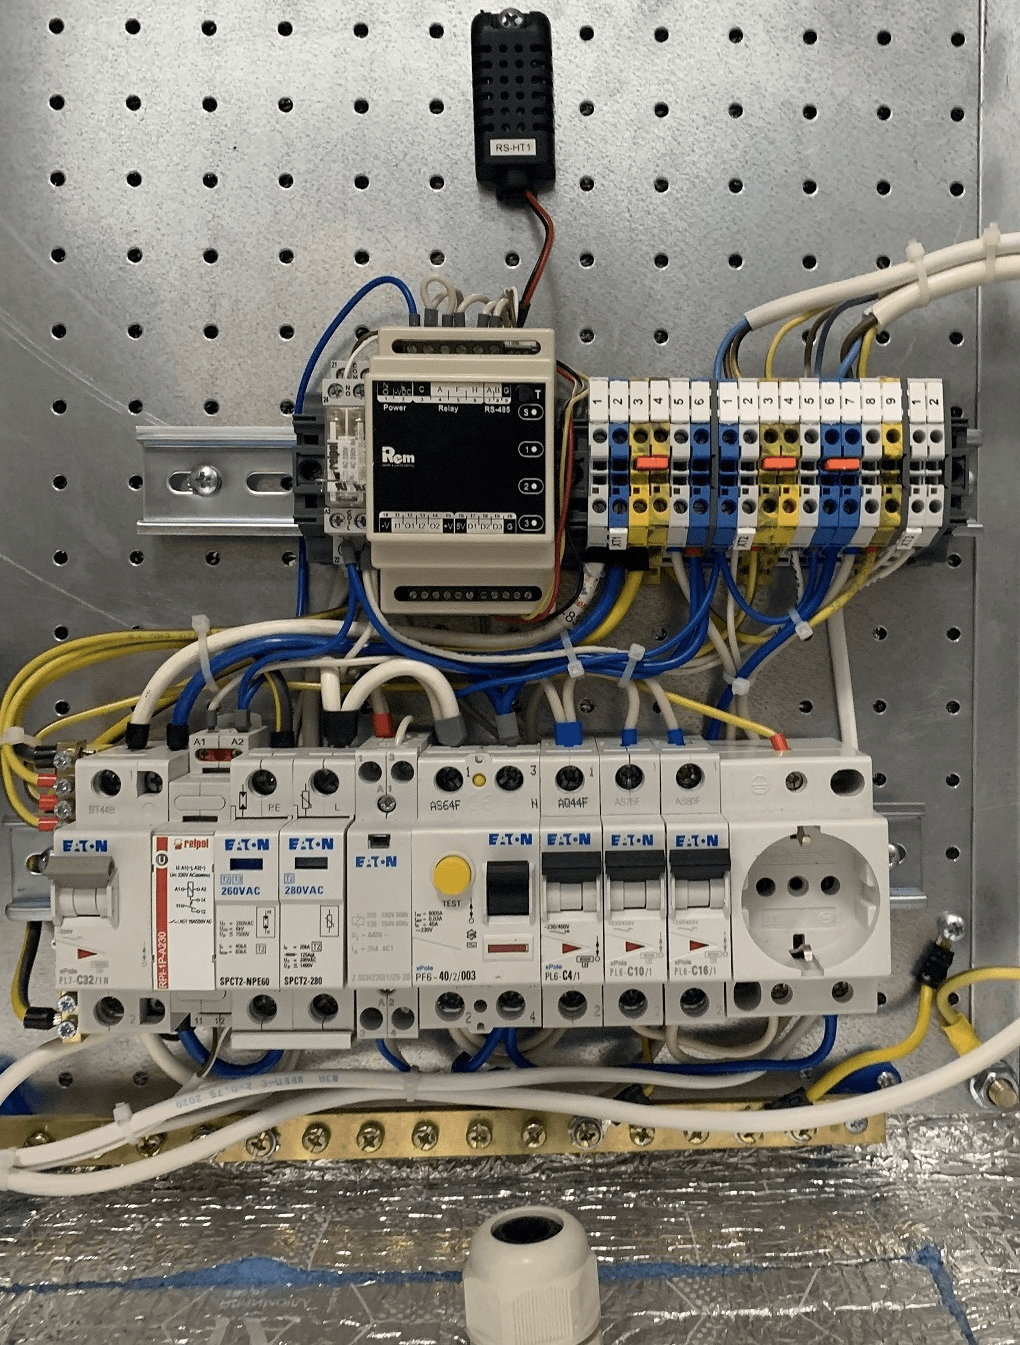 Шкаф всепогодный напольный 30U (Ш1000 × Г600), комплектация Т1 с контроллером MC1 и датчиками от ЦМО